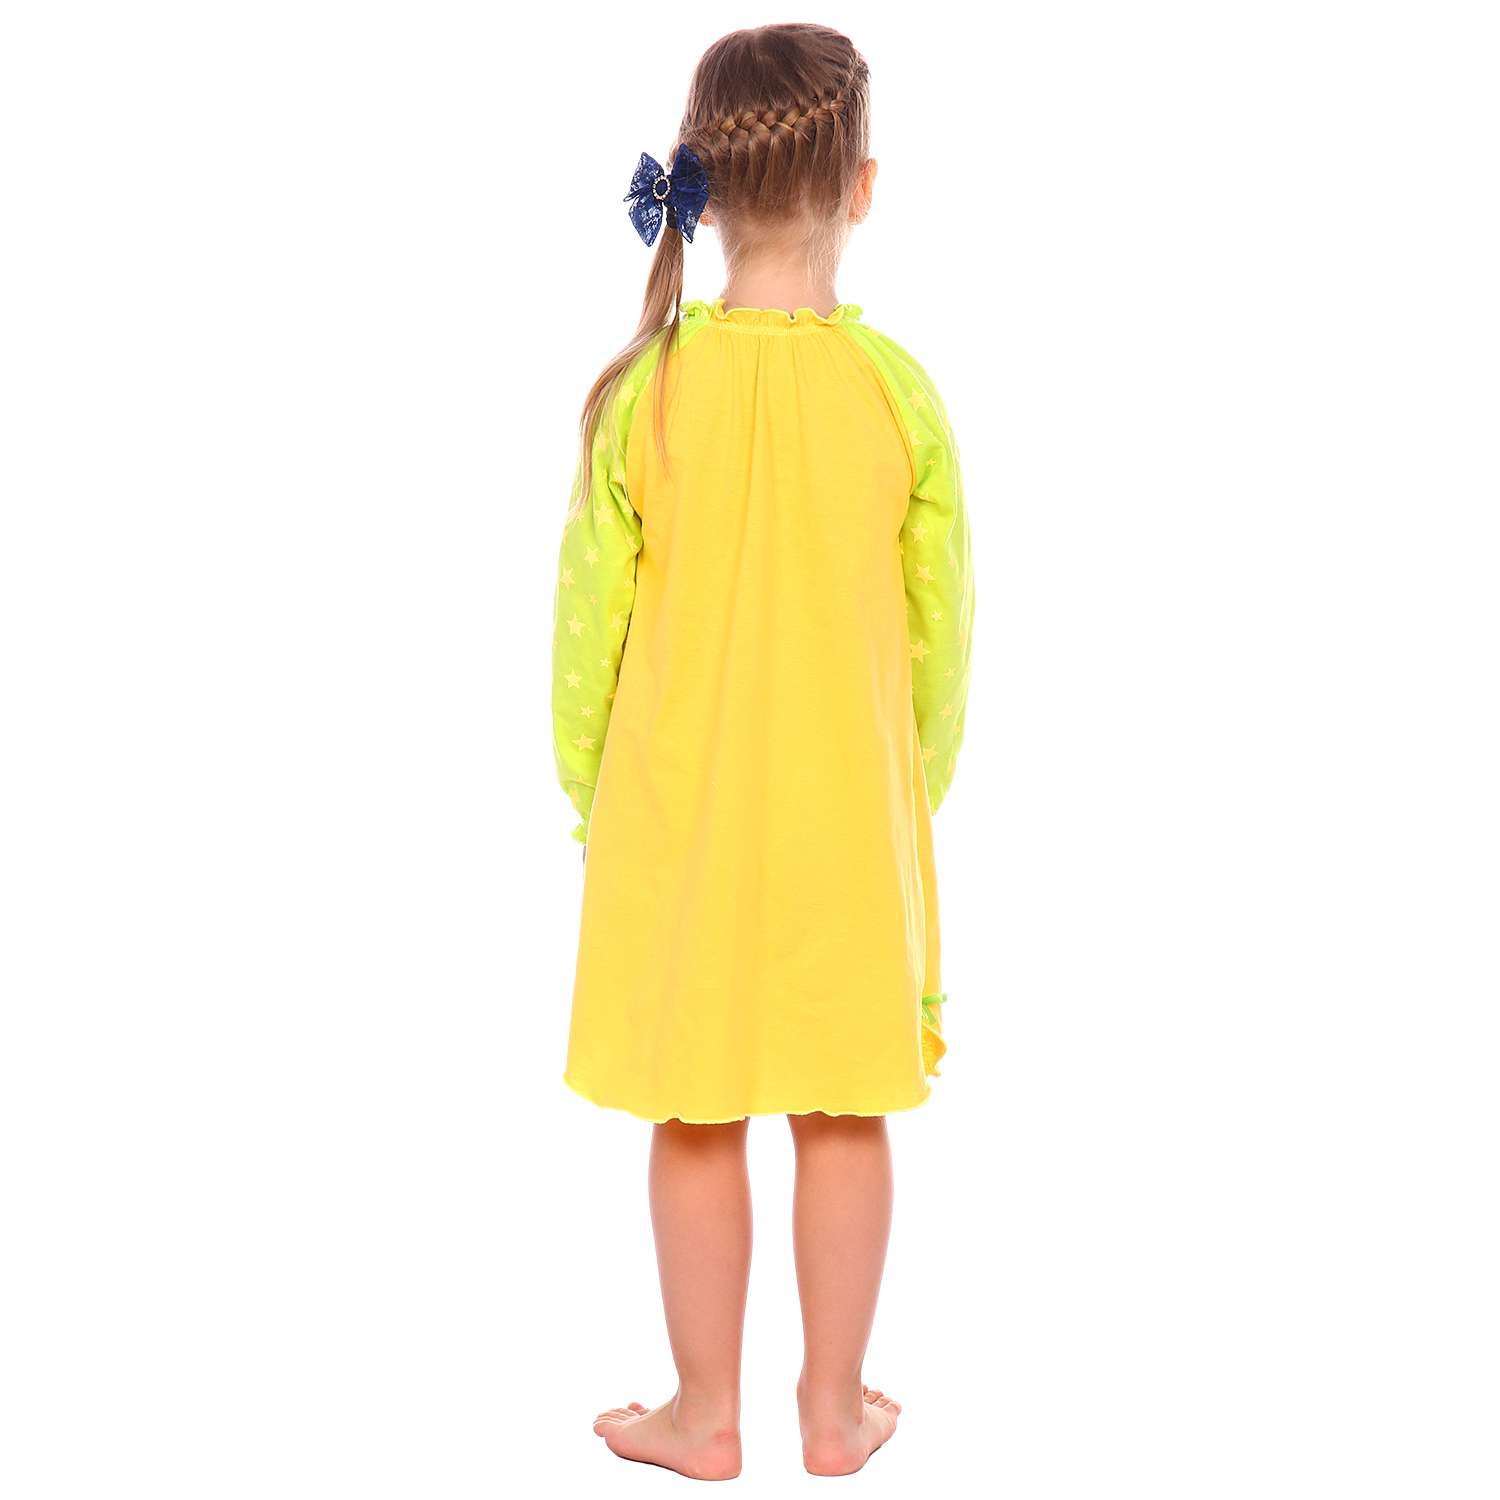 Сорочка ночная Детская Одежда S0505/желтый_салат - фото 3